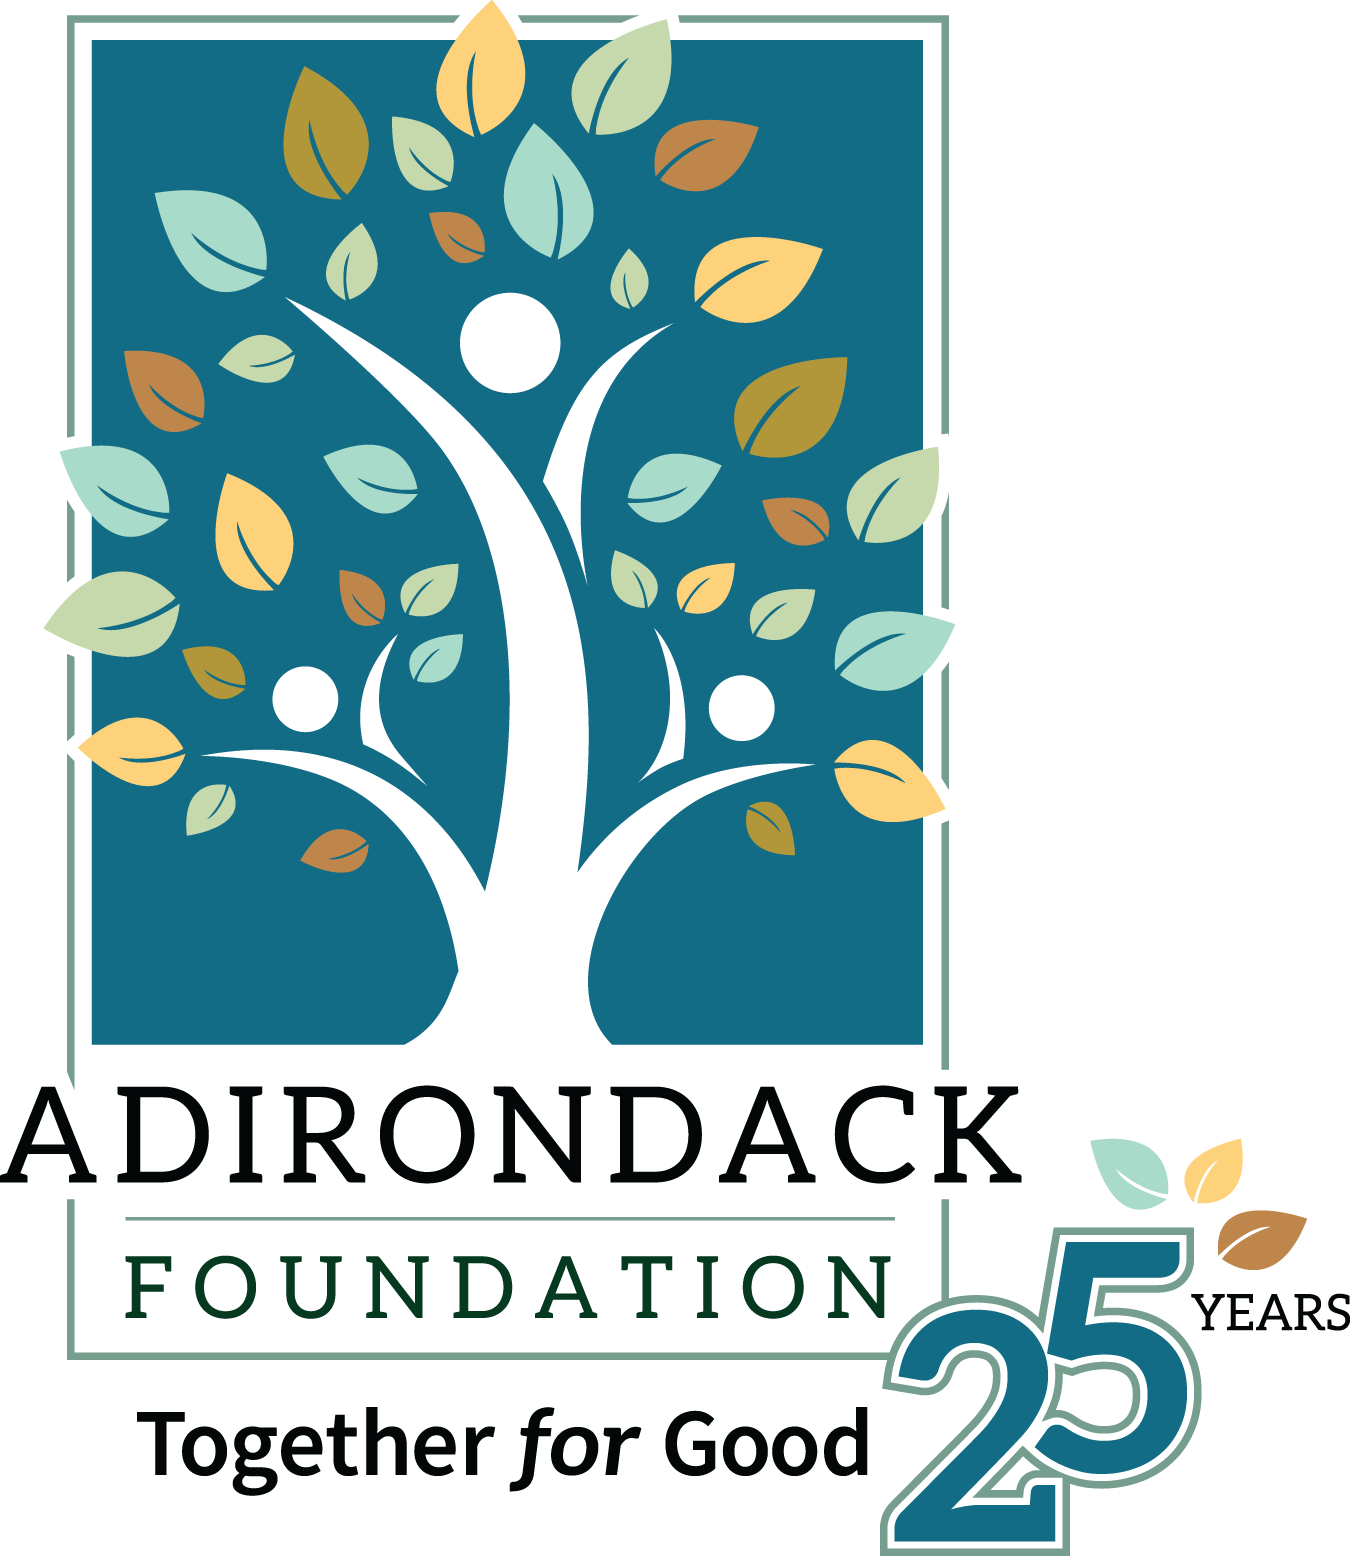 Adirondack Foundation Logo